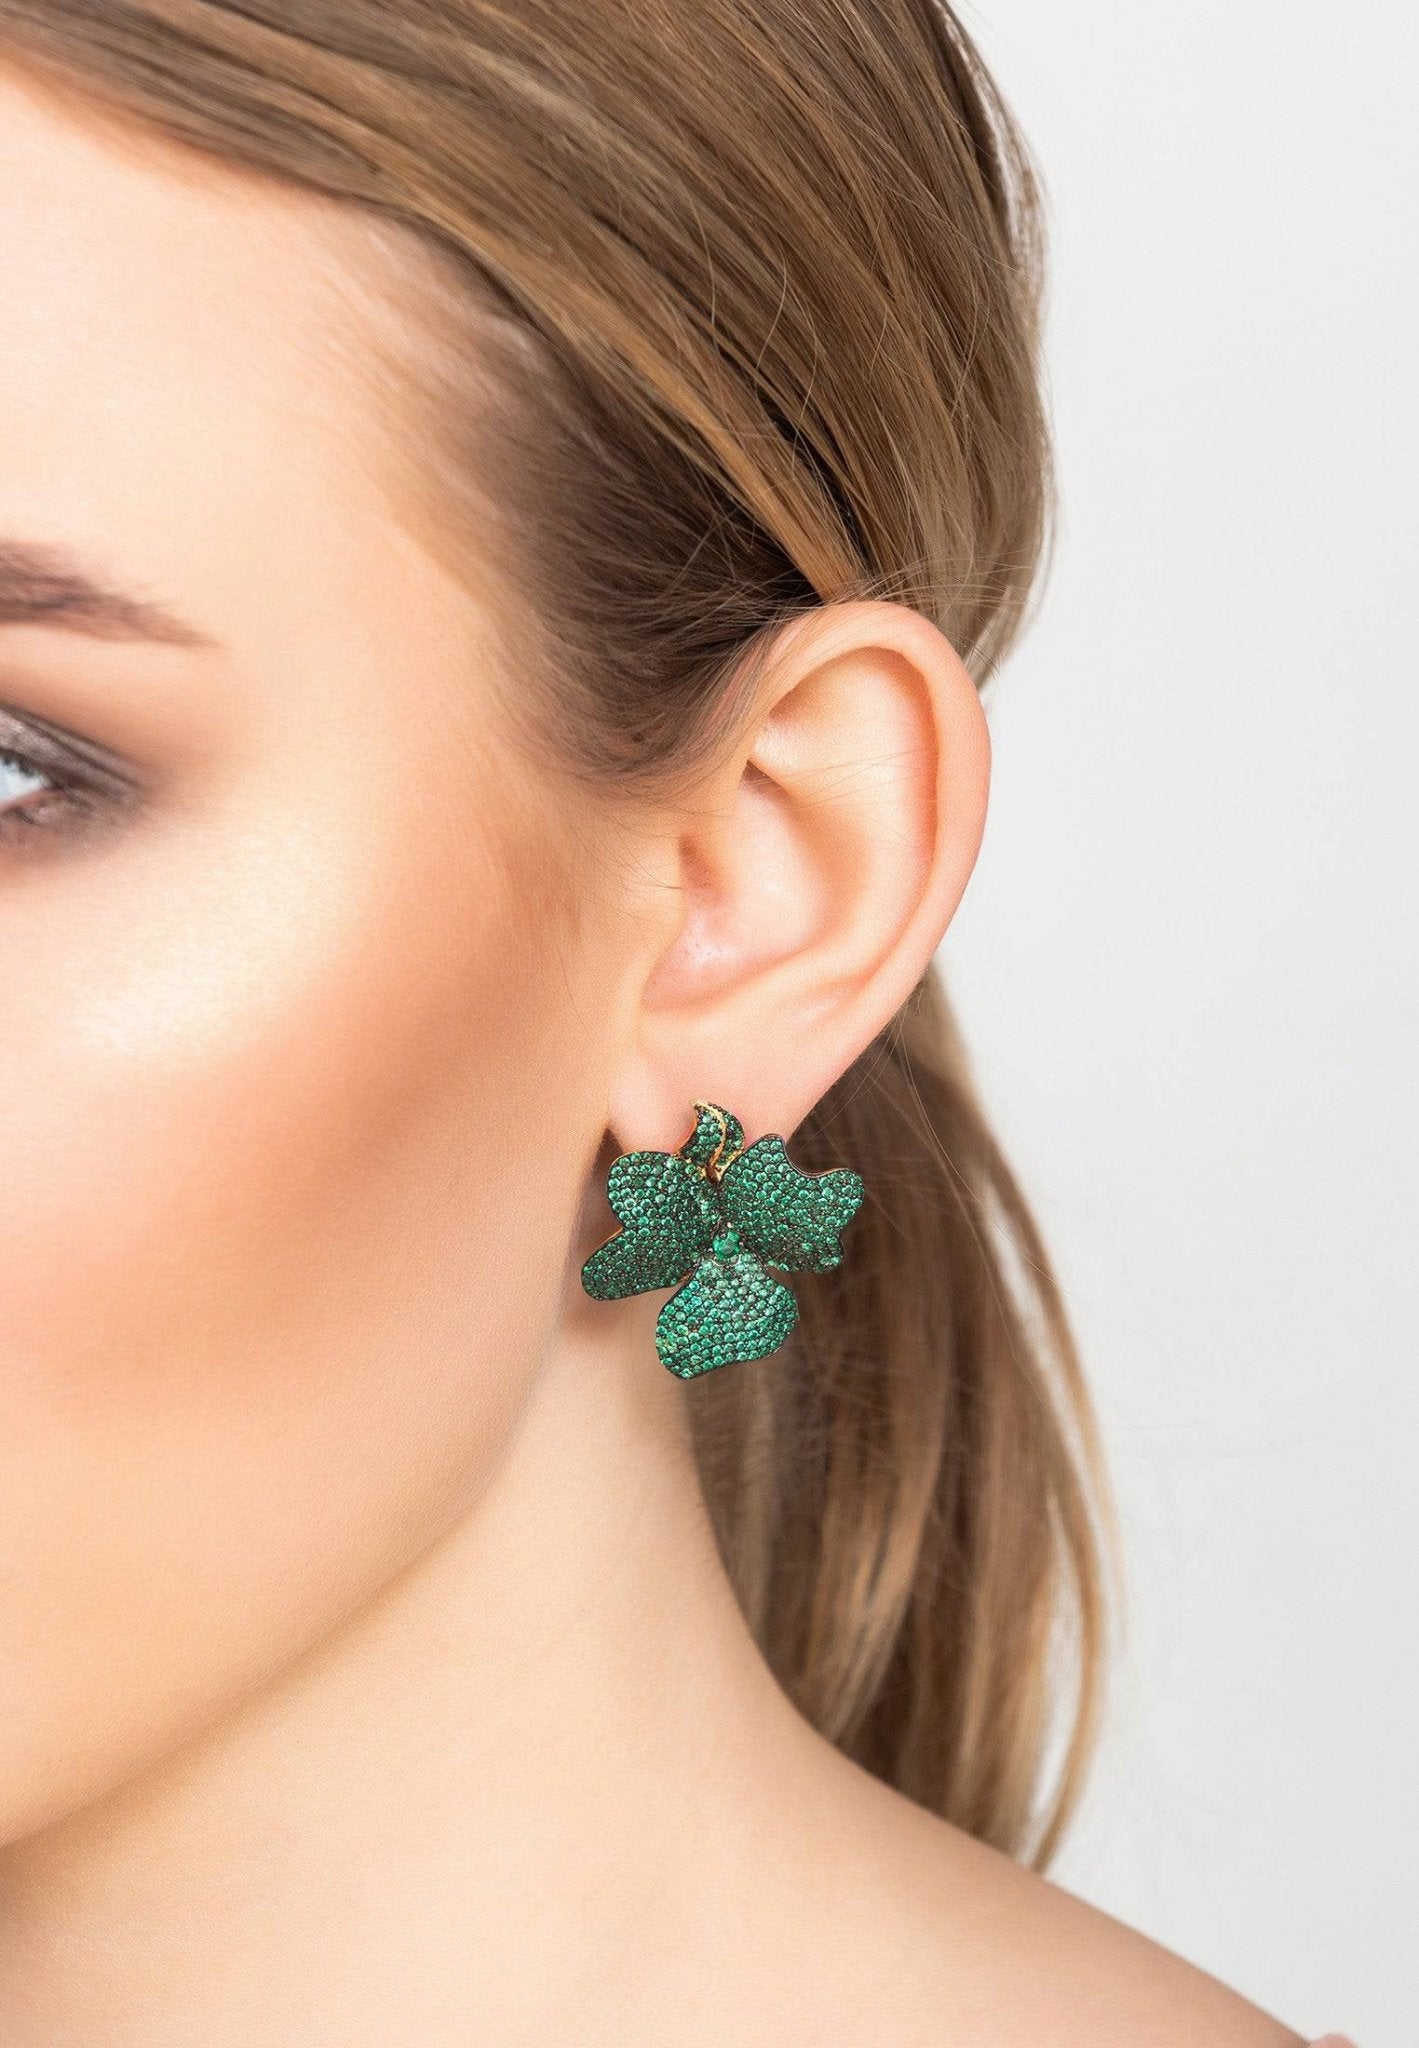 Flower Large Stud Earrings Gold Emerald Green - LATELITA Earrings